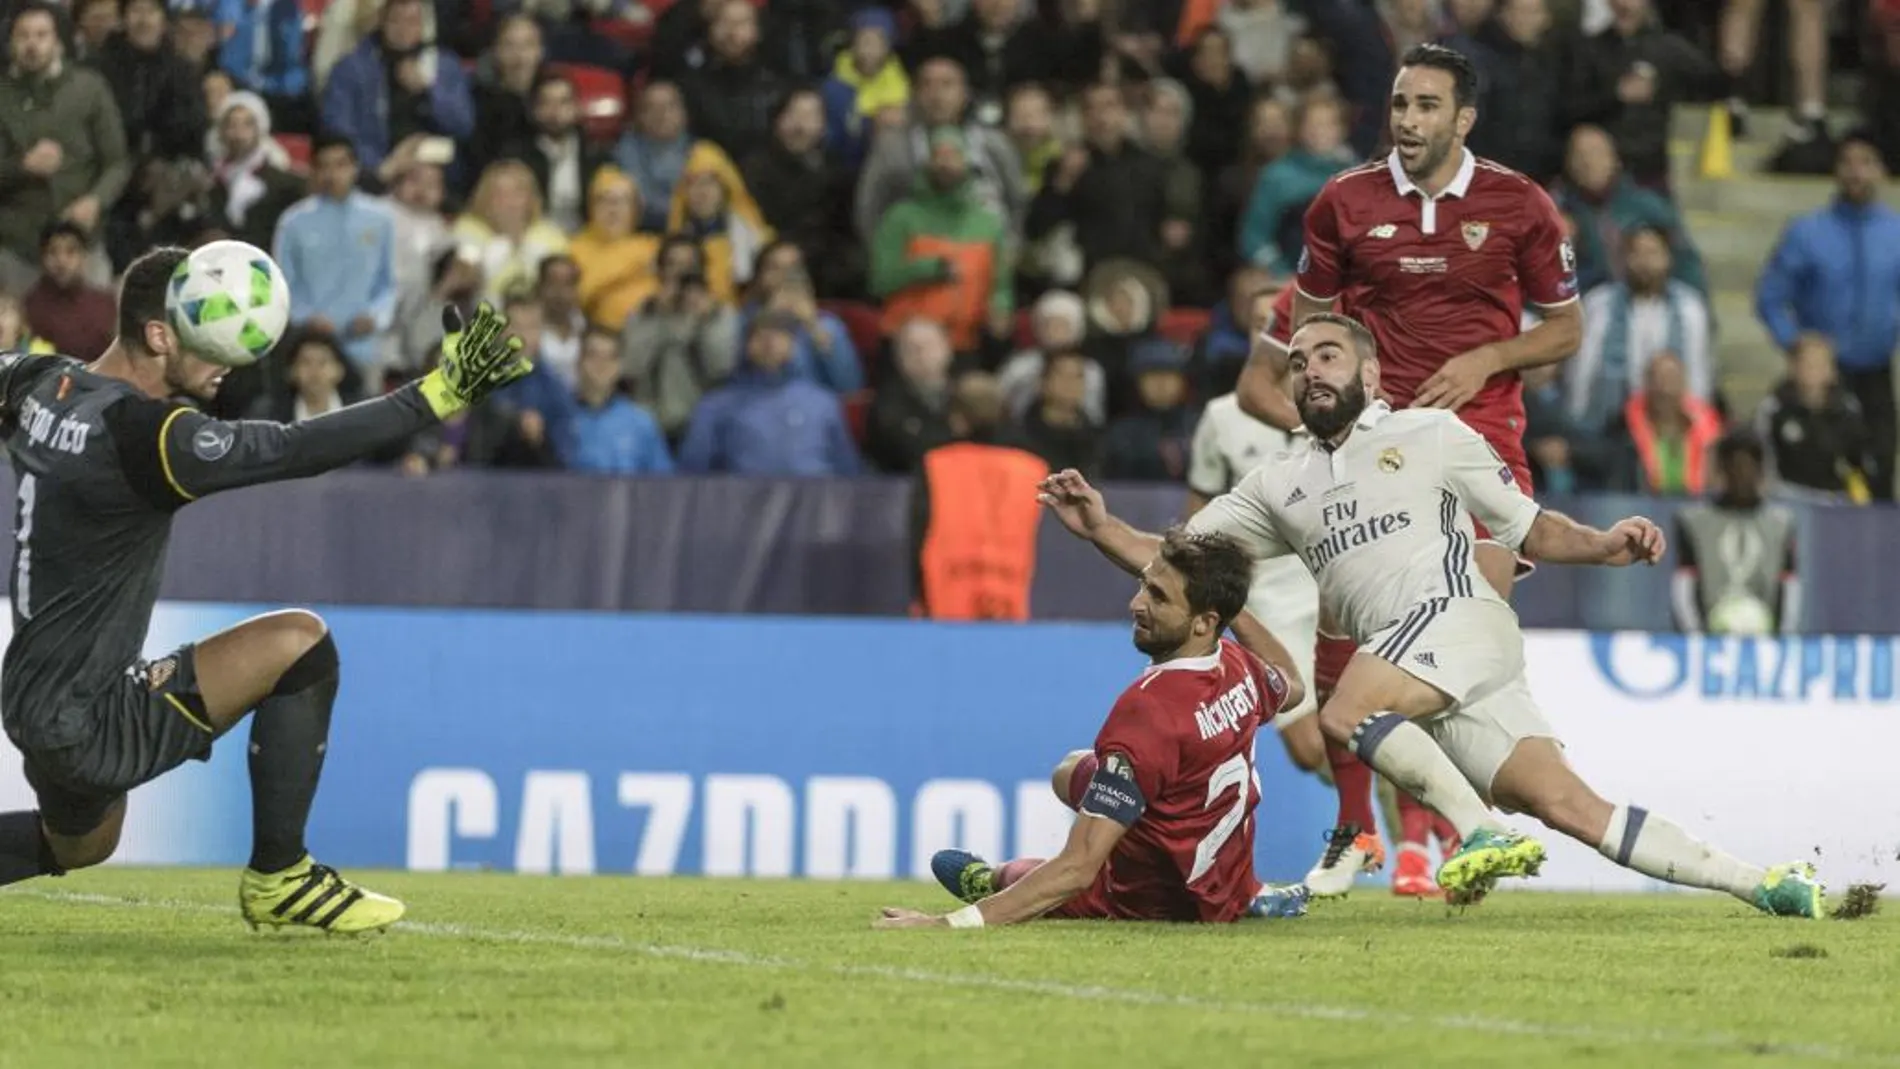 El defensa del Real Madrid Carvajal marca el tercer gol del Real Madrid